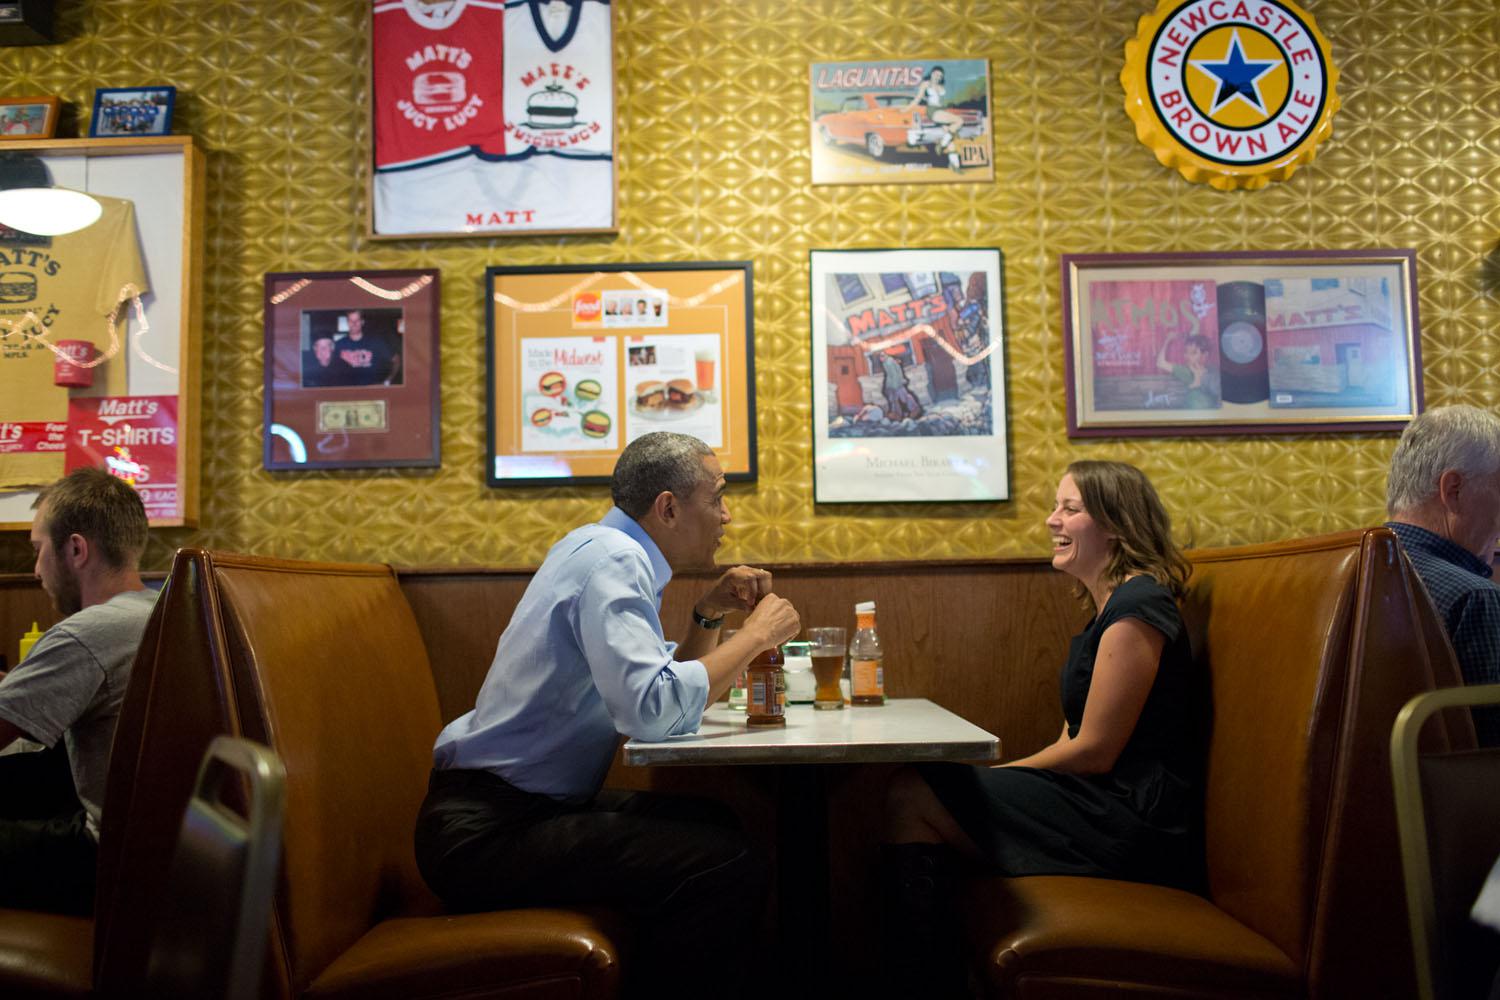 Obama incontra Rebekah Erler al Matt's Bar di Minneapolis, Minnesota il 26 giugno 2014. Lei è una madre lavoratrice che gli ha scritto delle sue difficoltà.